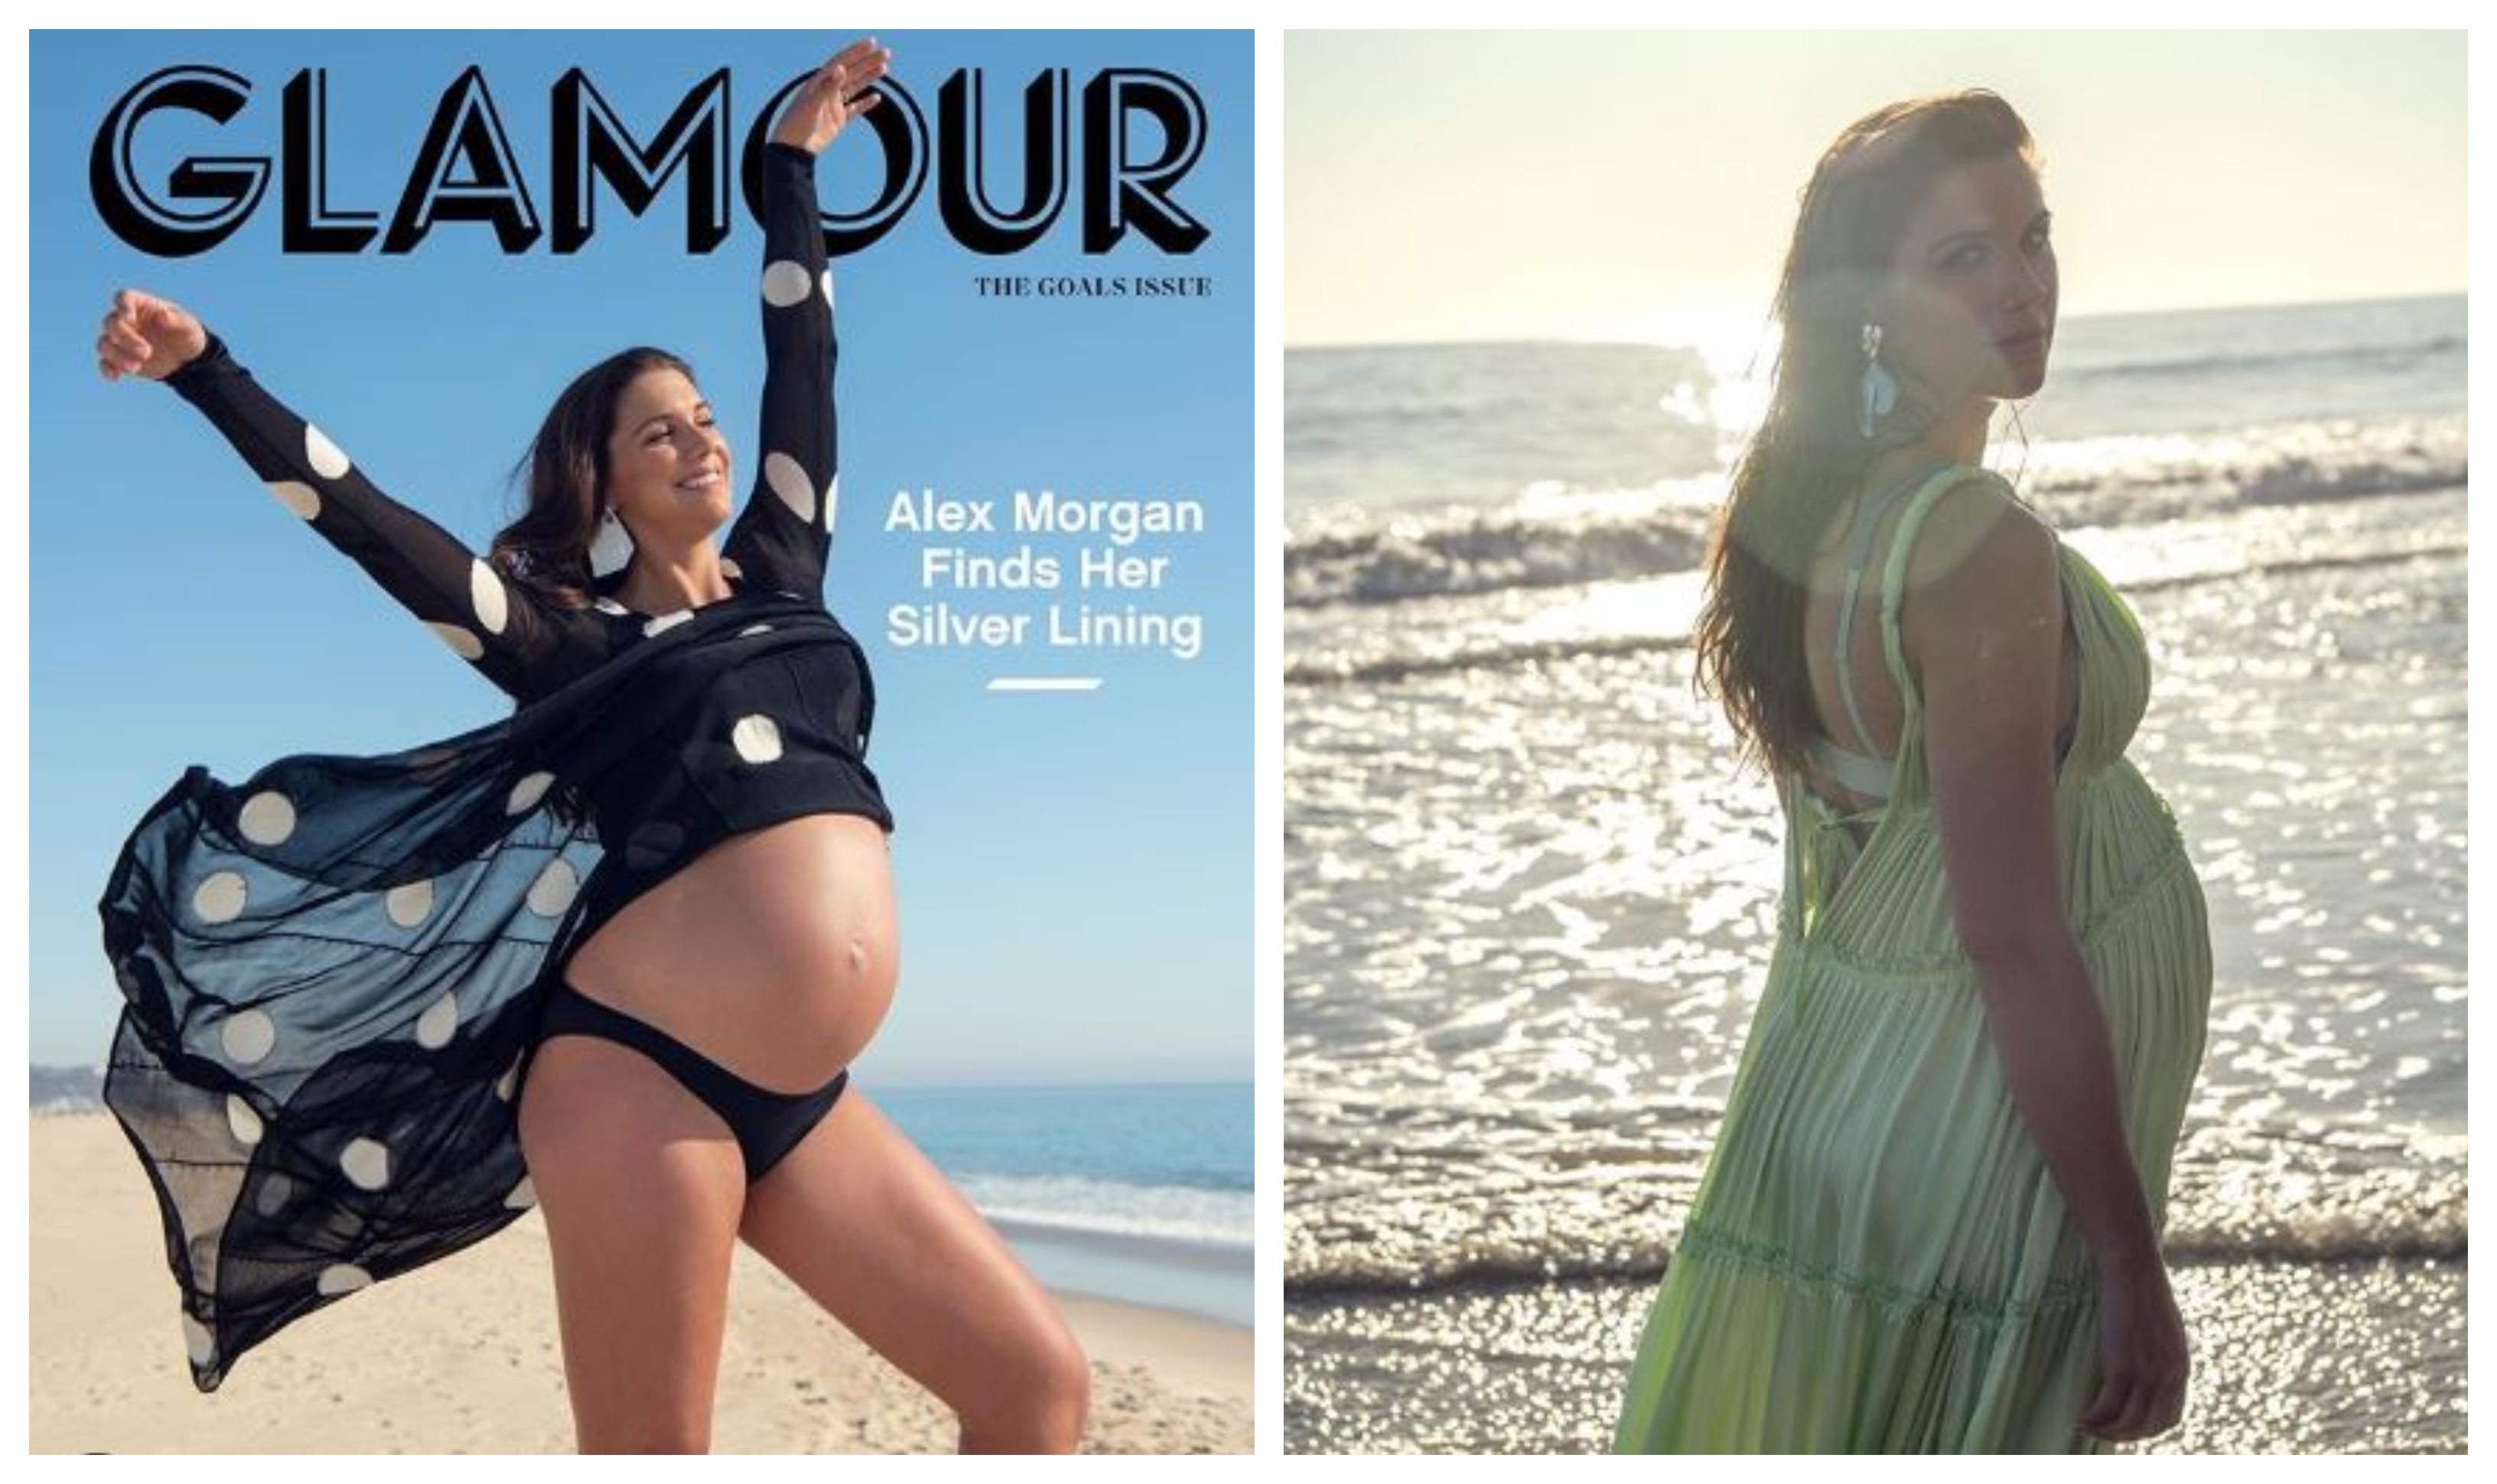 La futbolista Alex Morgan está en el noveno mes de su embarazo. (Foto Prensa Libre: Instagram @glamourmag)